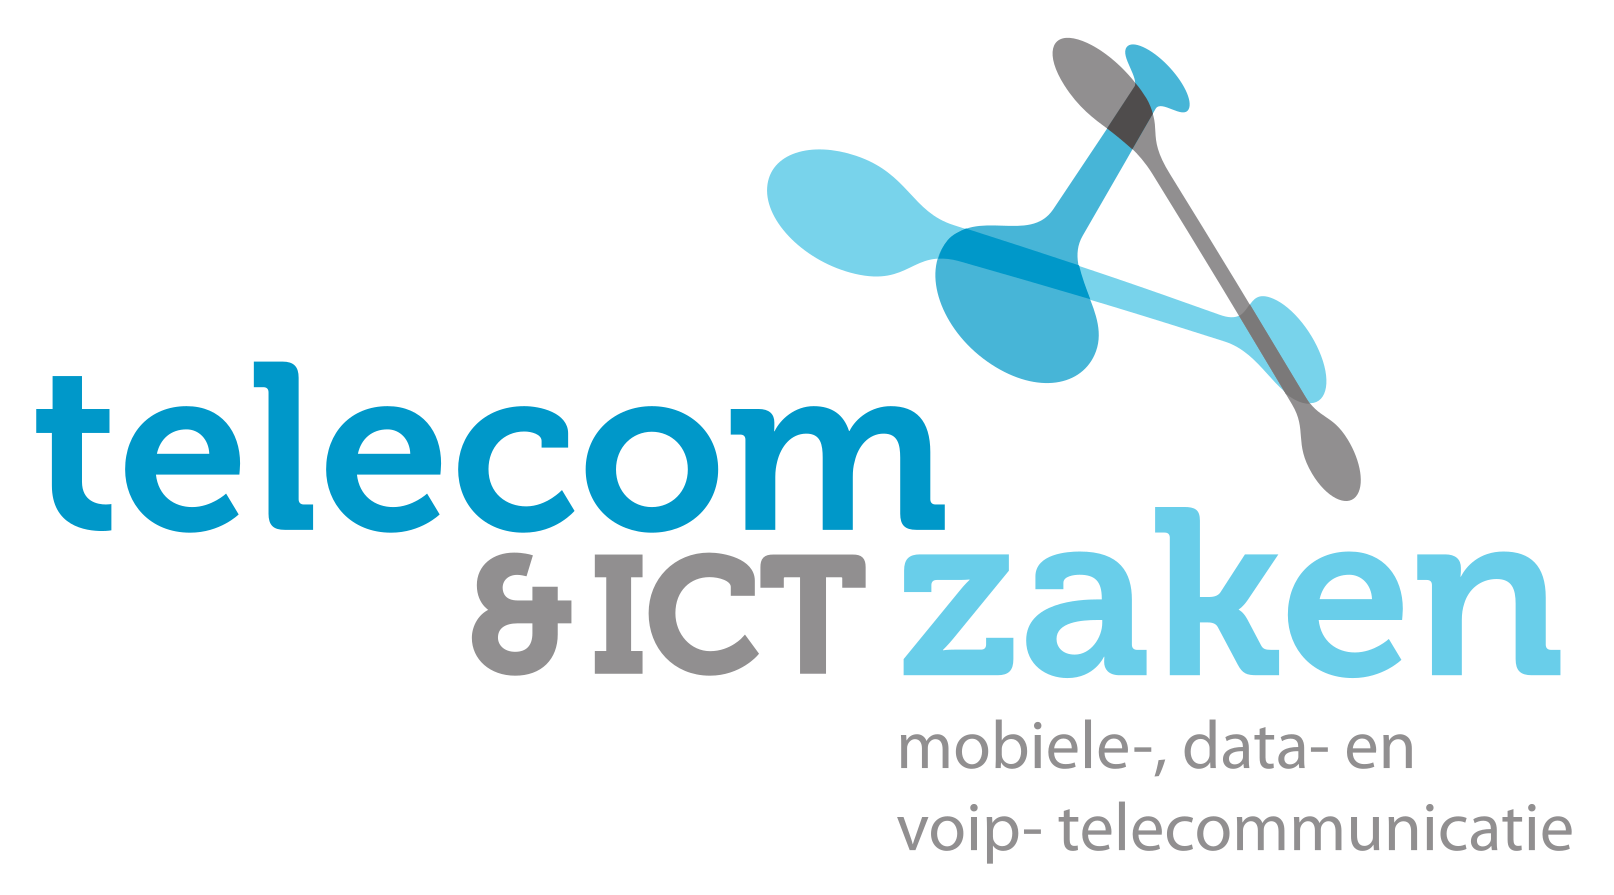 Telecom & ICT Zaken